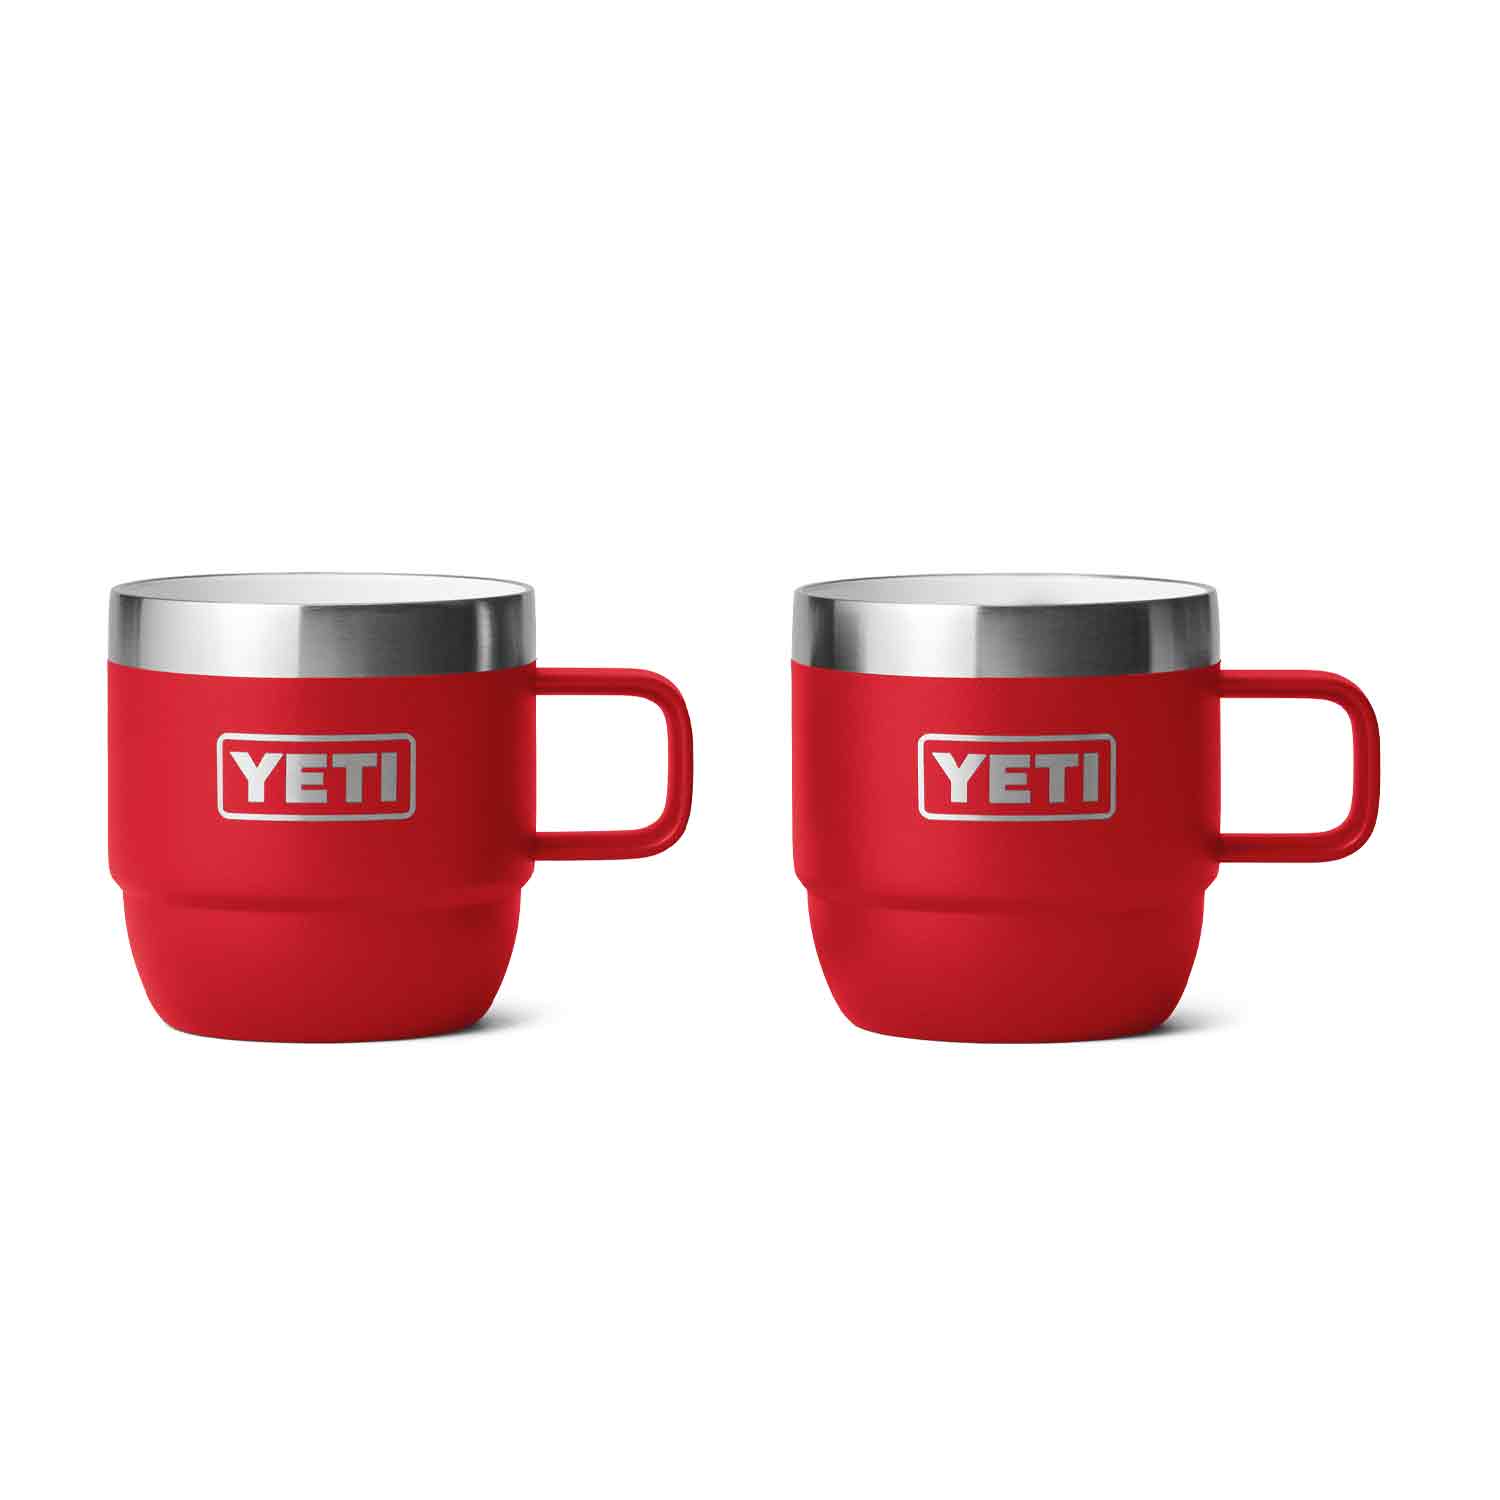 Yeti, Dining, Yeti Rambler Mug Harvest Red 4 Oz